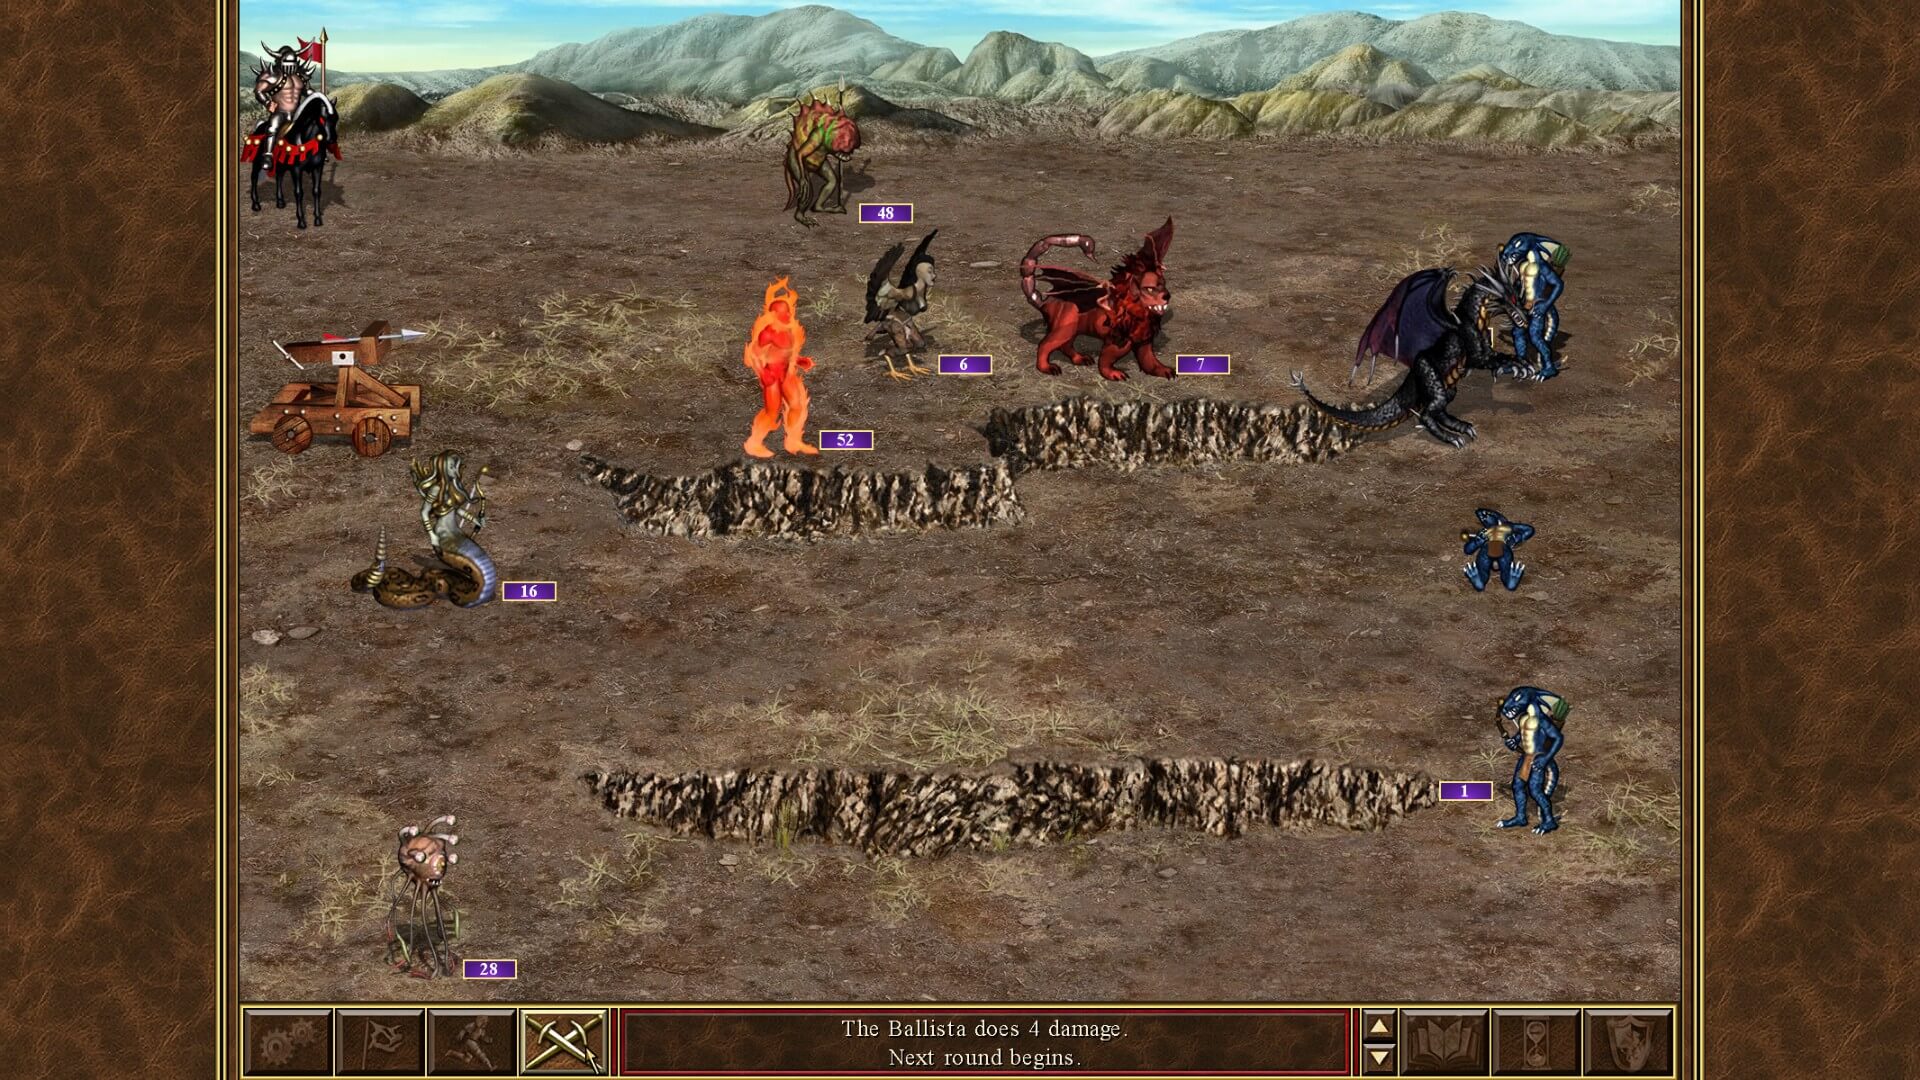 Легендарная игра Heroes of Might & Magic III получит HD-переиздание